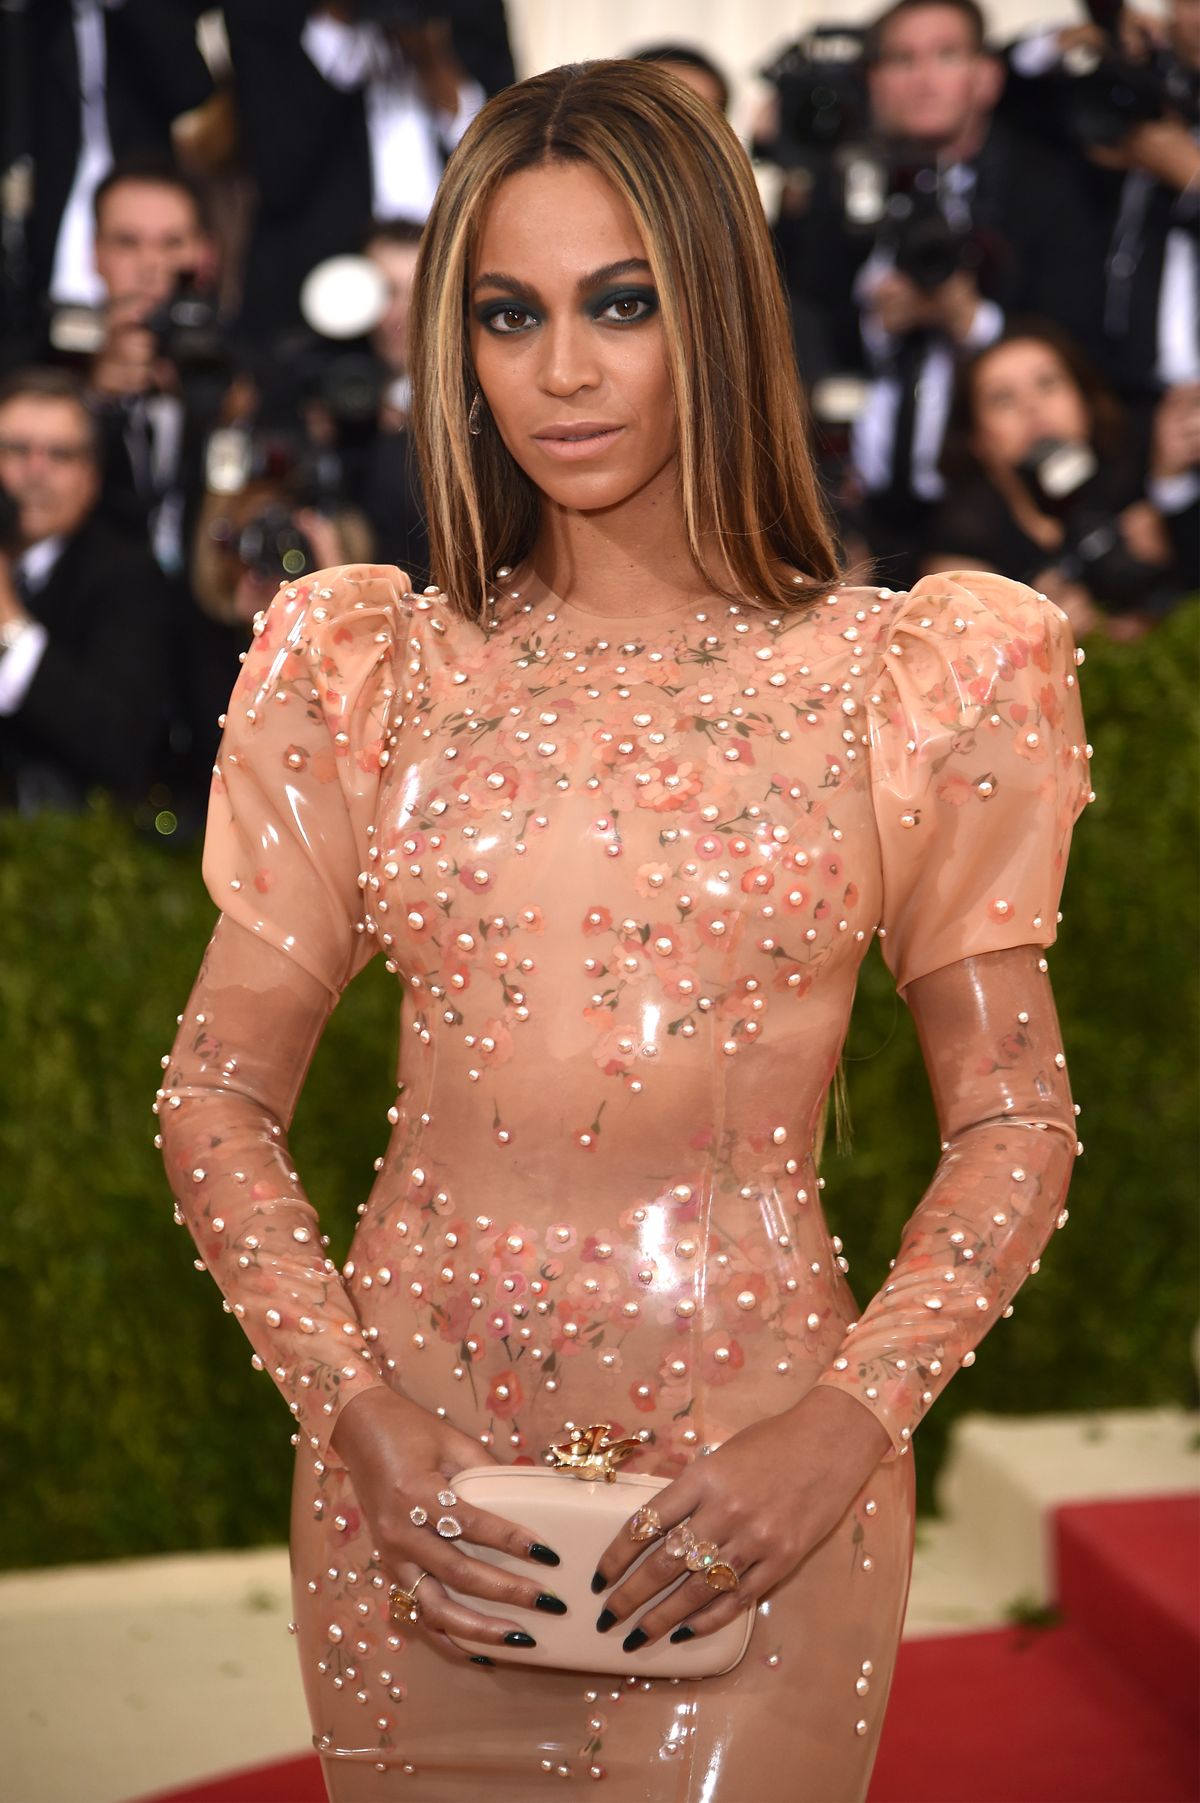 Le look du gala du Met de Beyonce est épique